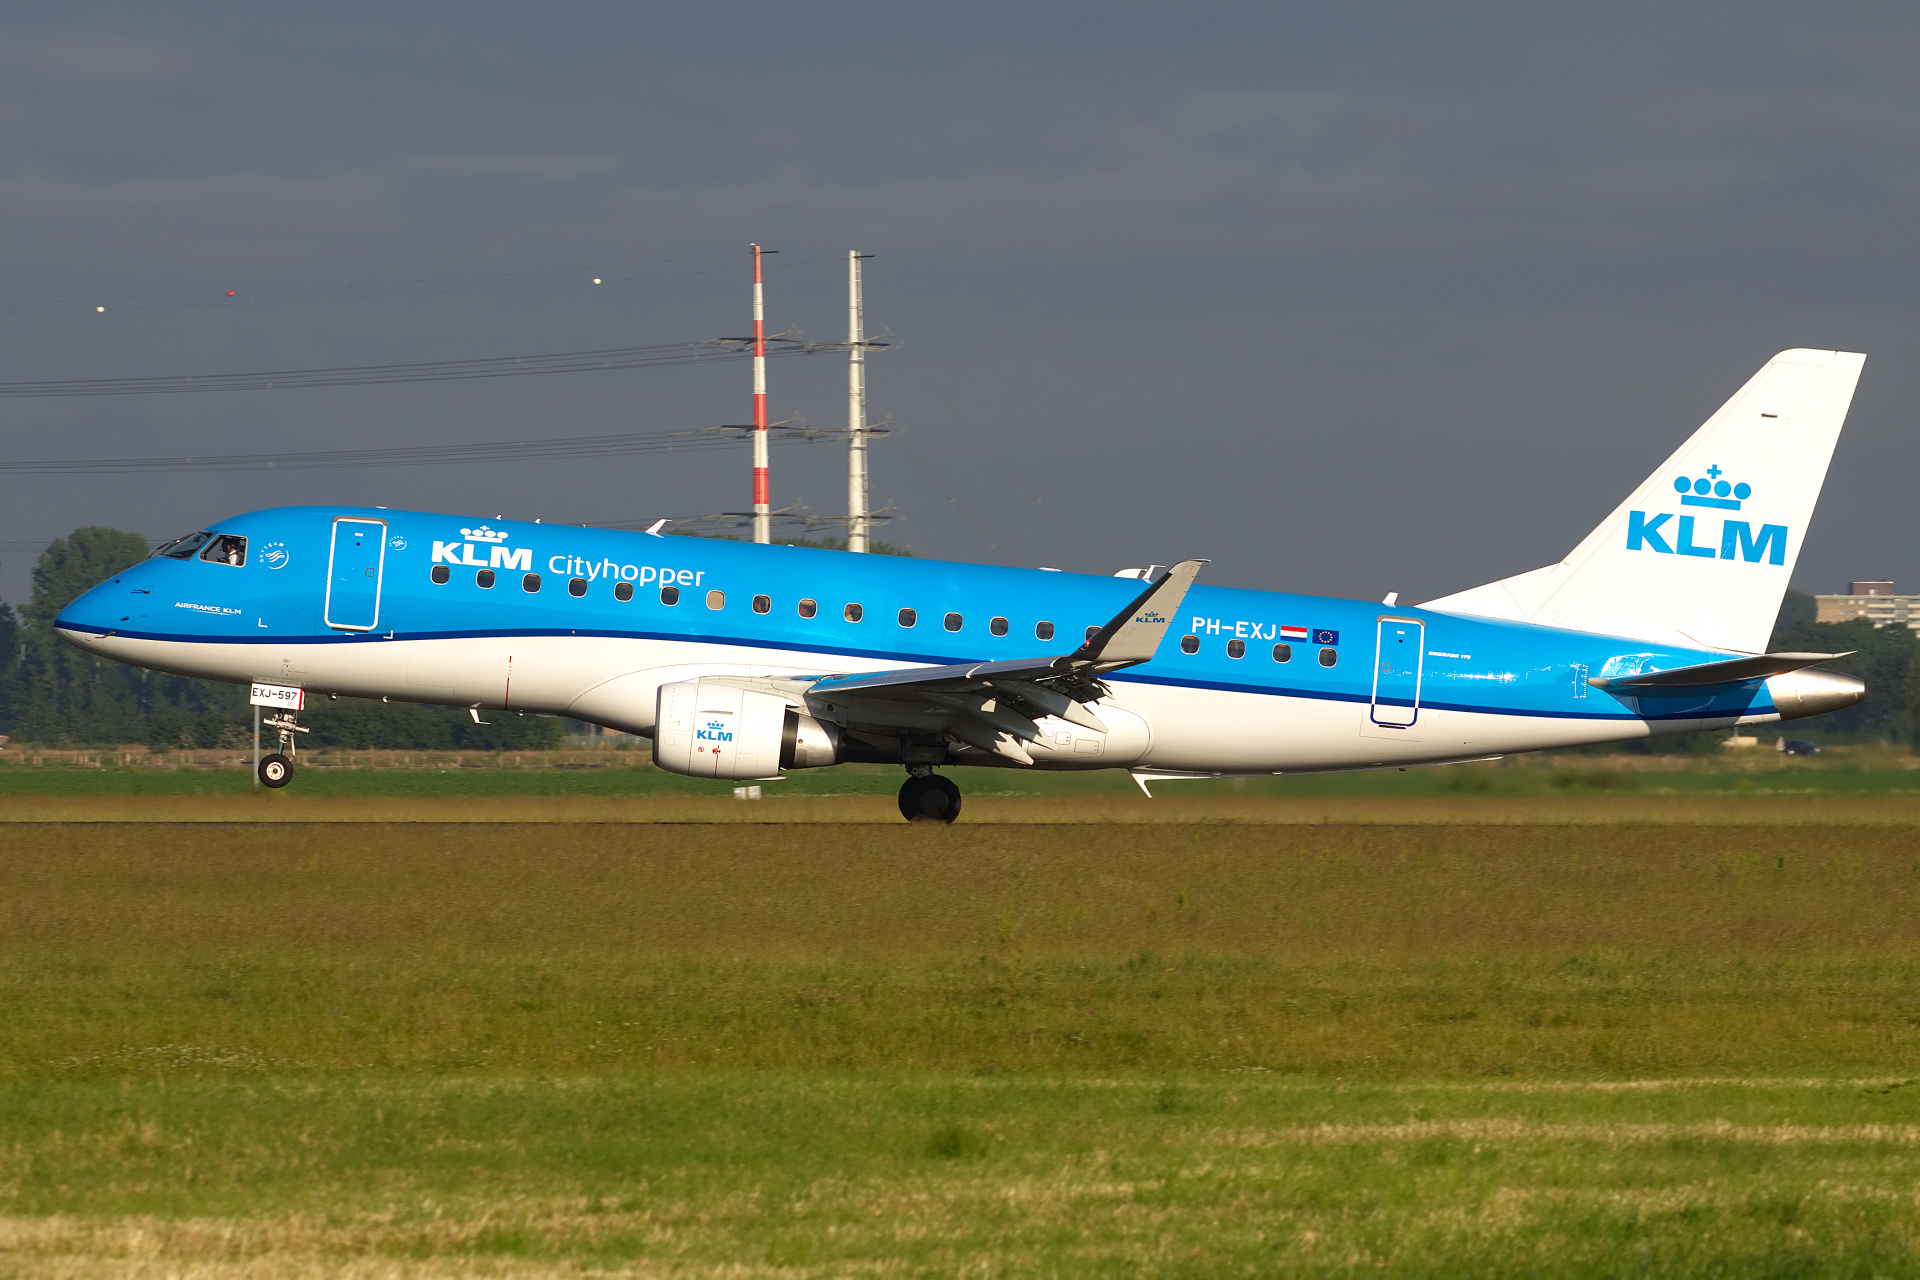 PH-EXJ (Aircraft » Schiphol Spotting » Embraer E175 » KLM Cityhopper)